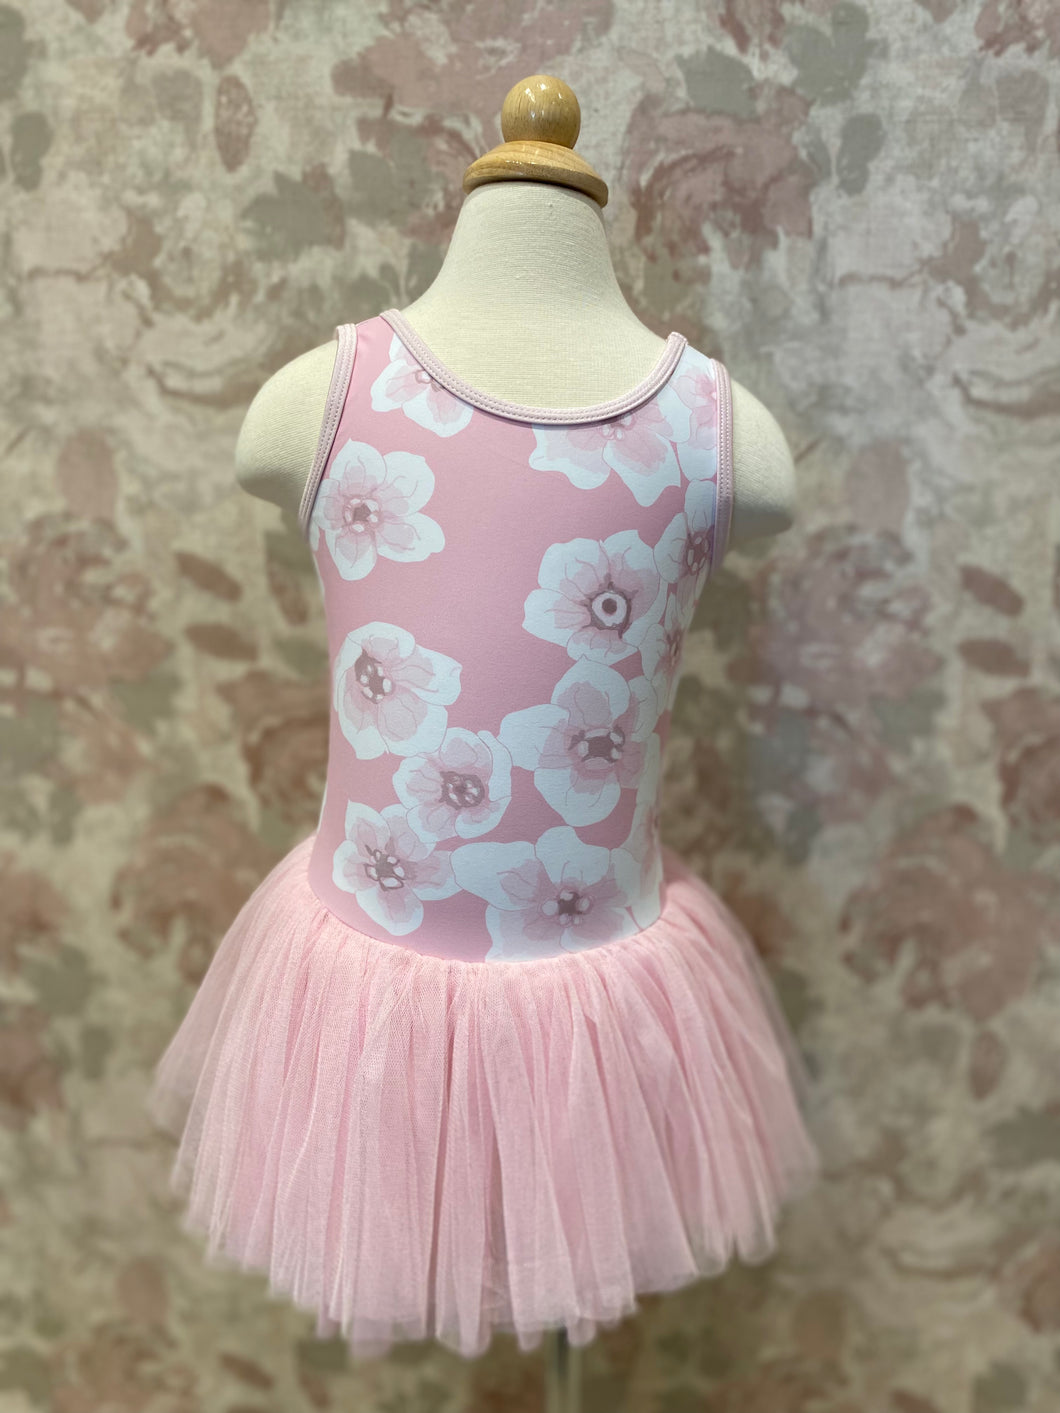 Girls Floral Printed Pink Tutu Dress